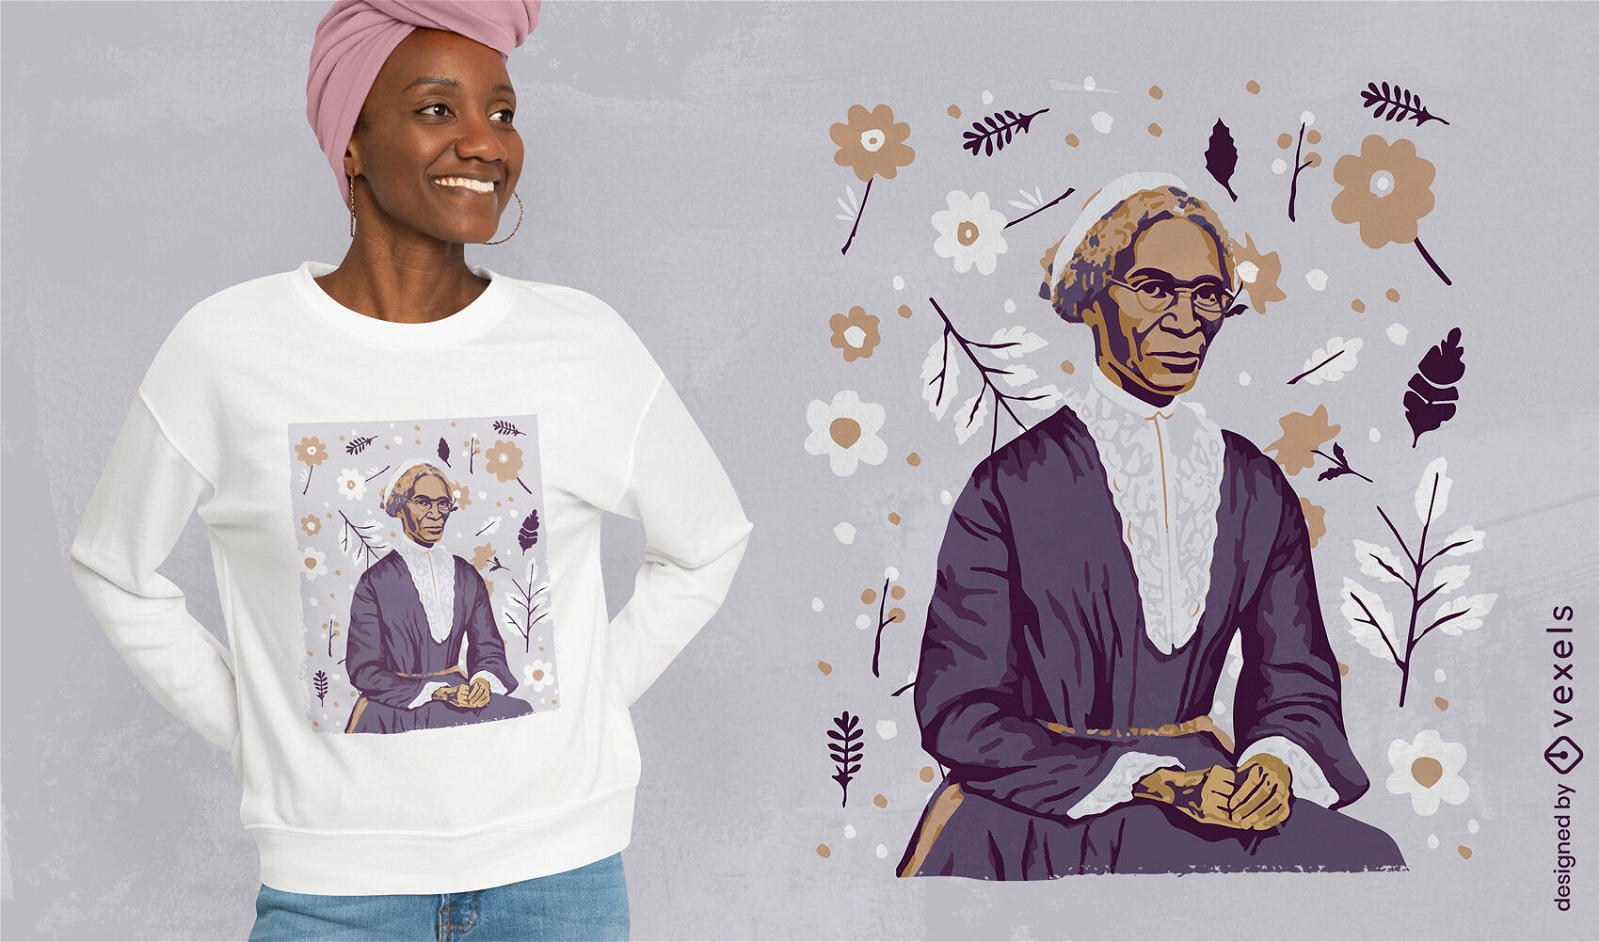 Inspirierendes T-Shirt-Design von Sojourner Truth